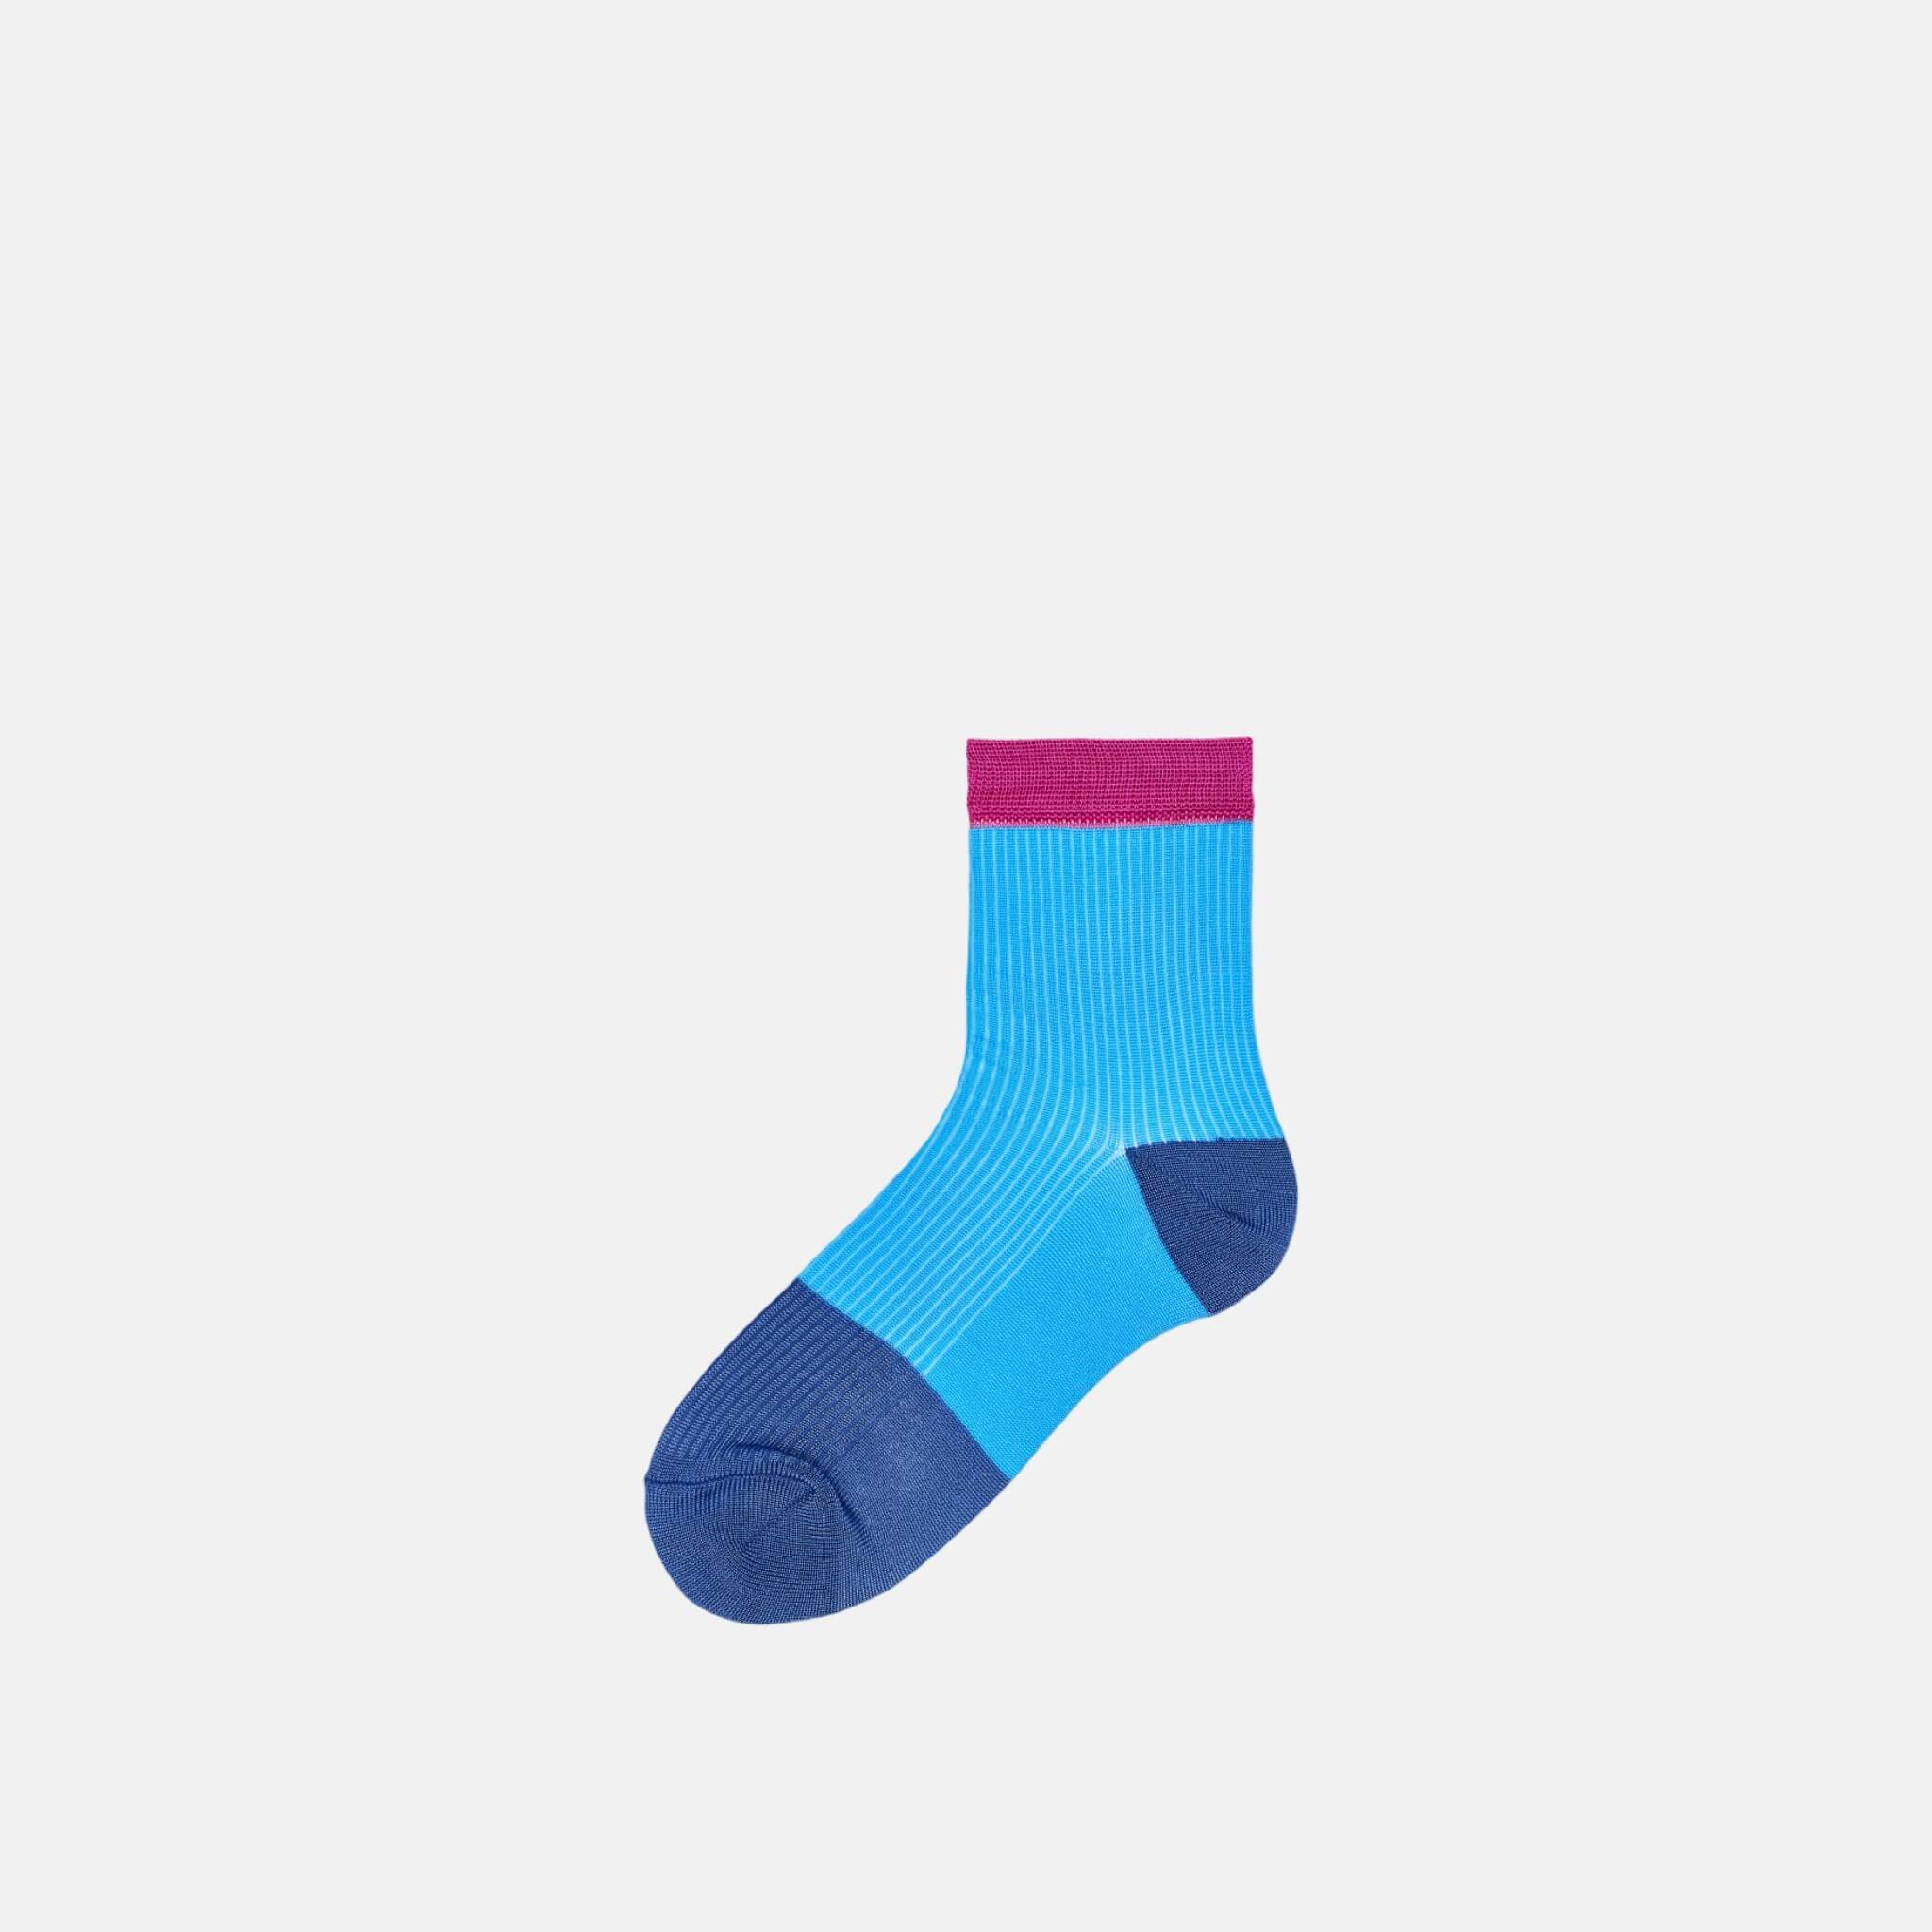 Dámské modré ponožky Happy Socks Janna // kolekce Hysteria